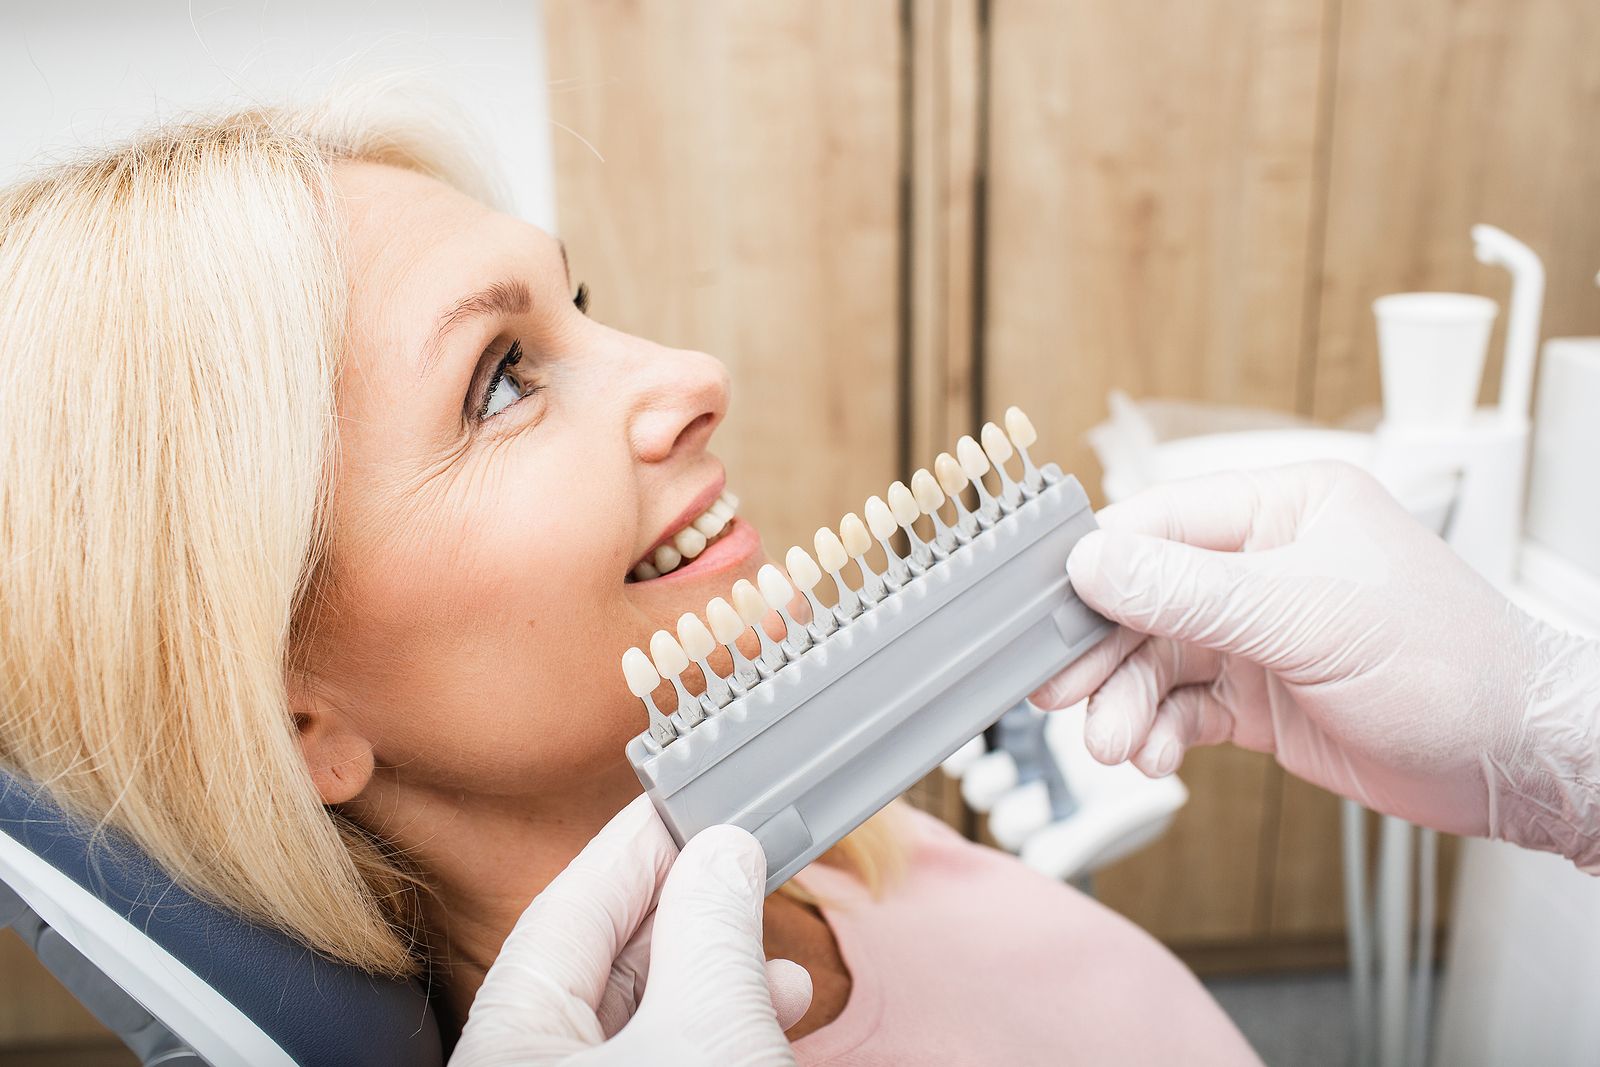 Prótesis dental fija o removible: ¿cuál me conviene? (bigstock)